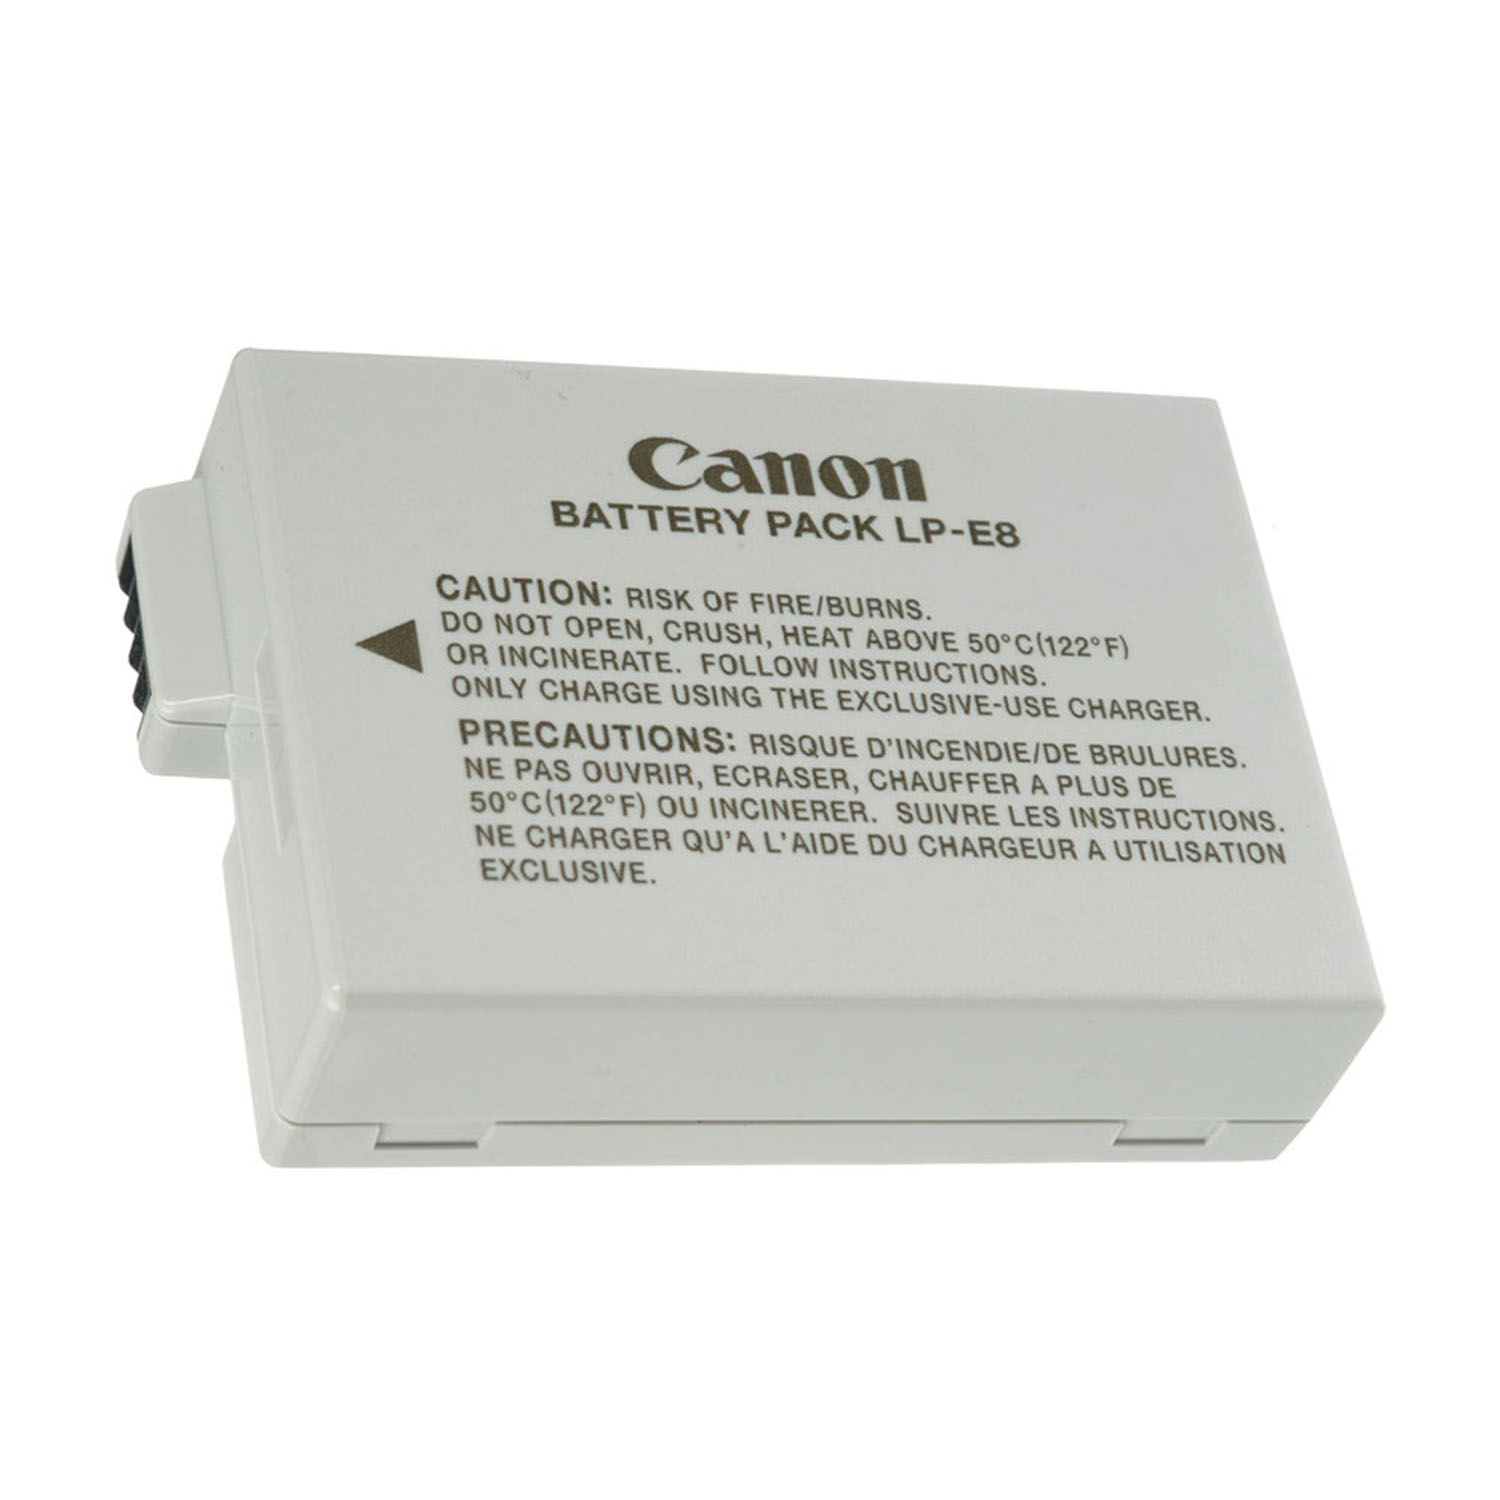   باطری LP-E8 کانن      Canon Battery Pack LP-E8